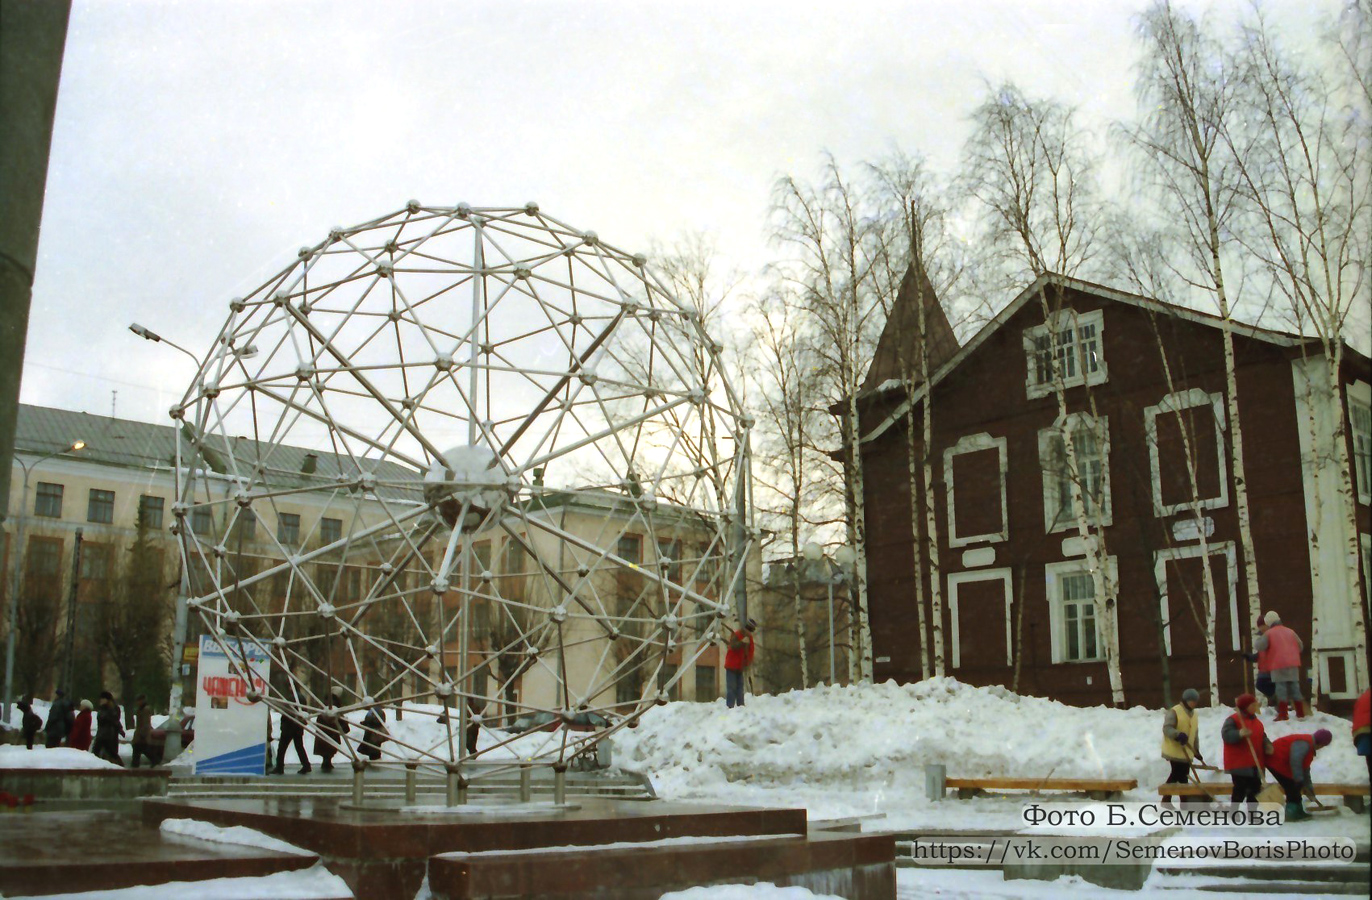 1997. Petrozavodsk. Building of Kareldrev Trust